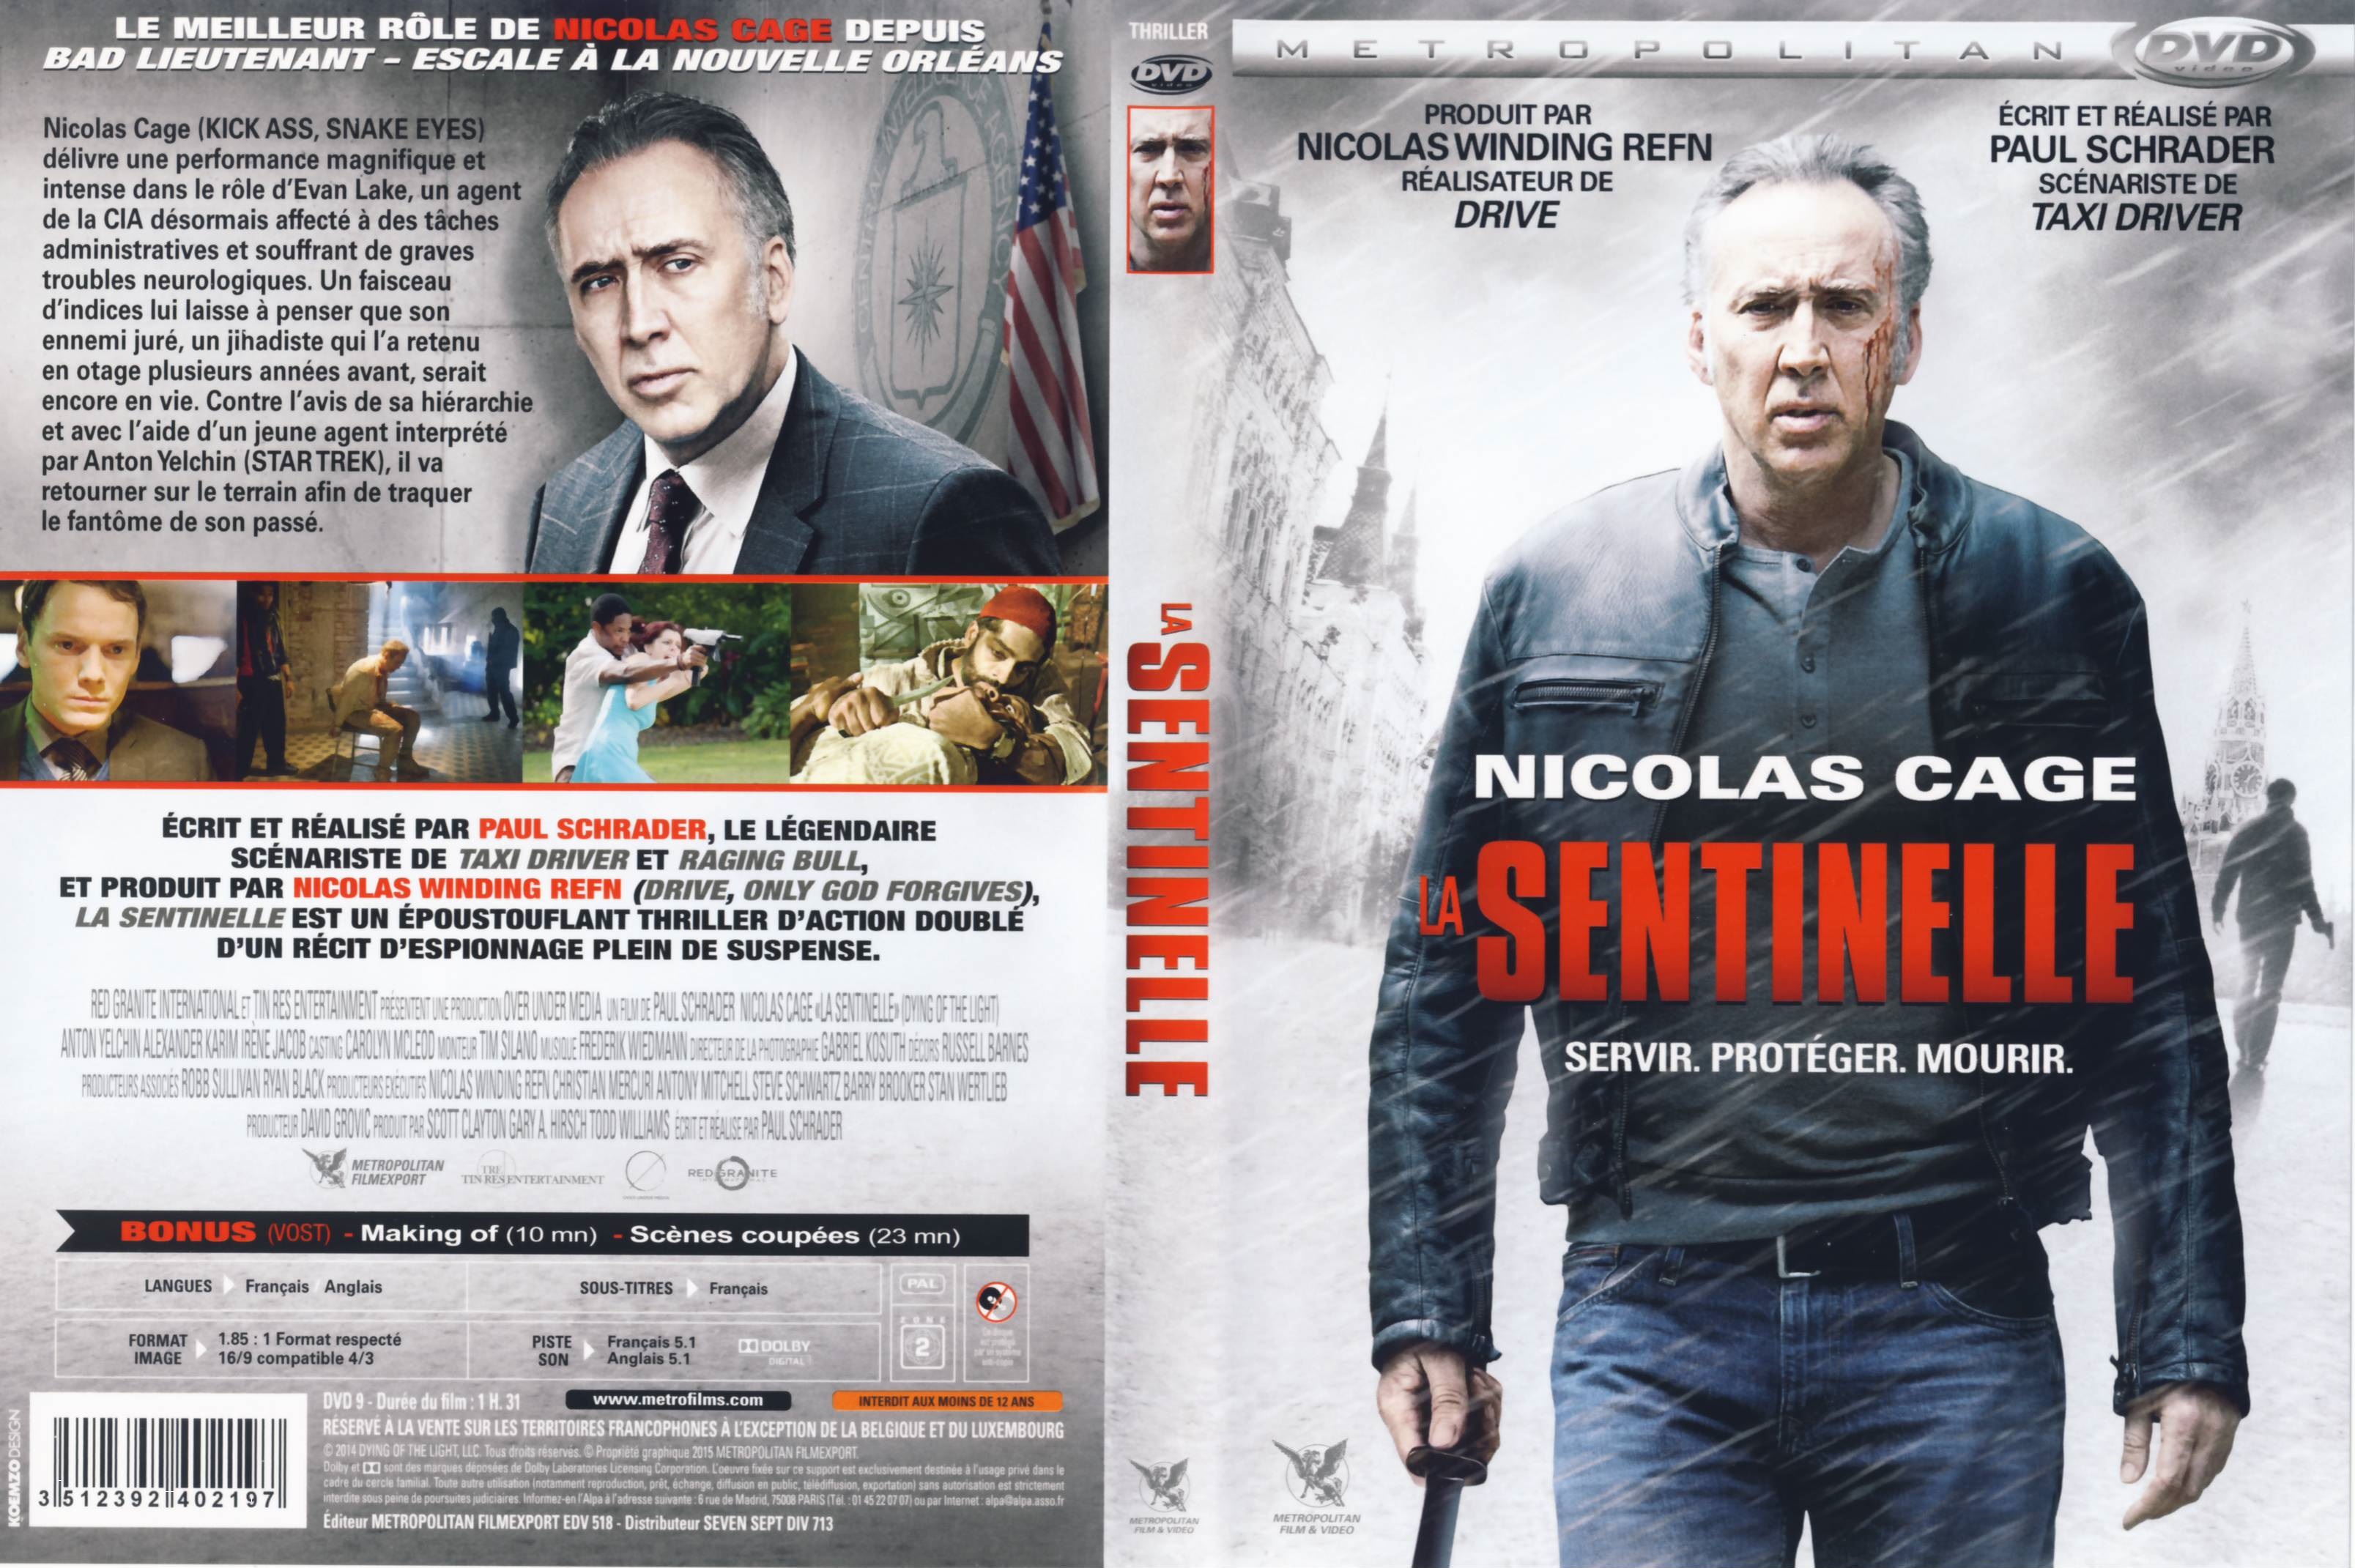 Jaquette DVD La Sentinelle (2015)